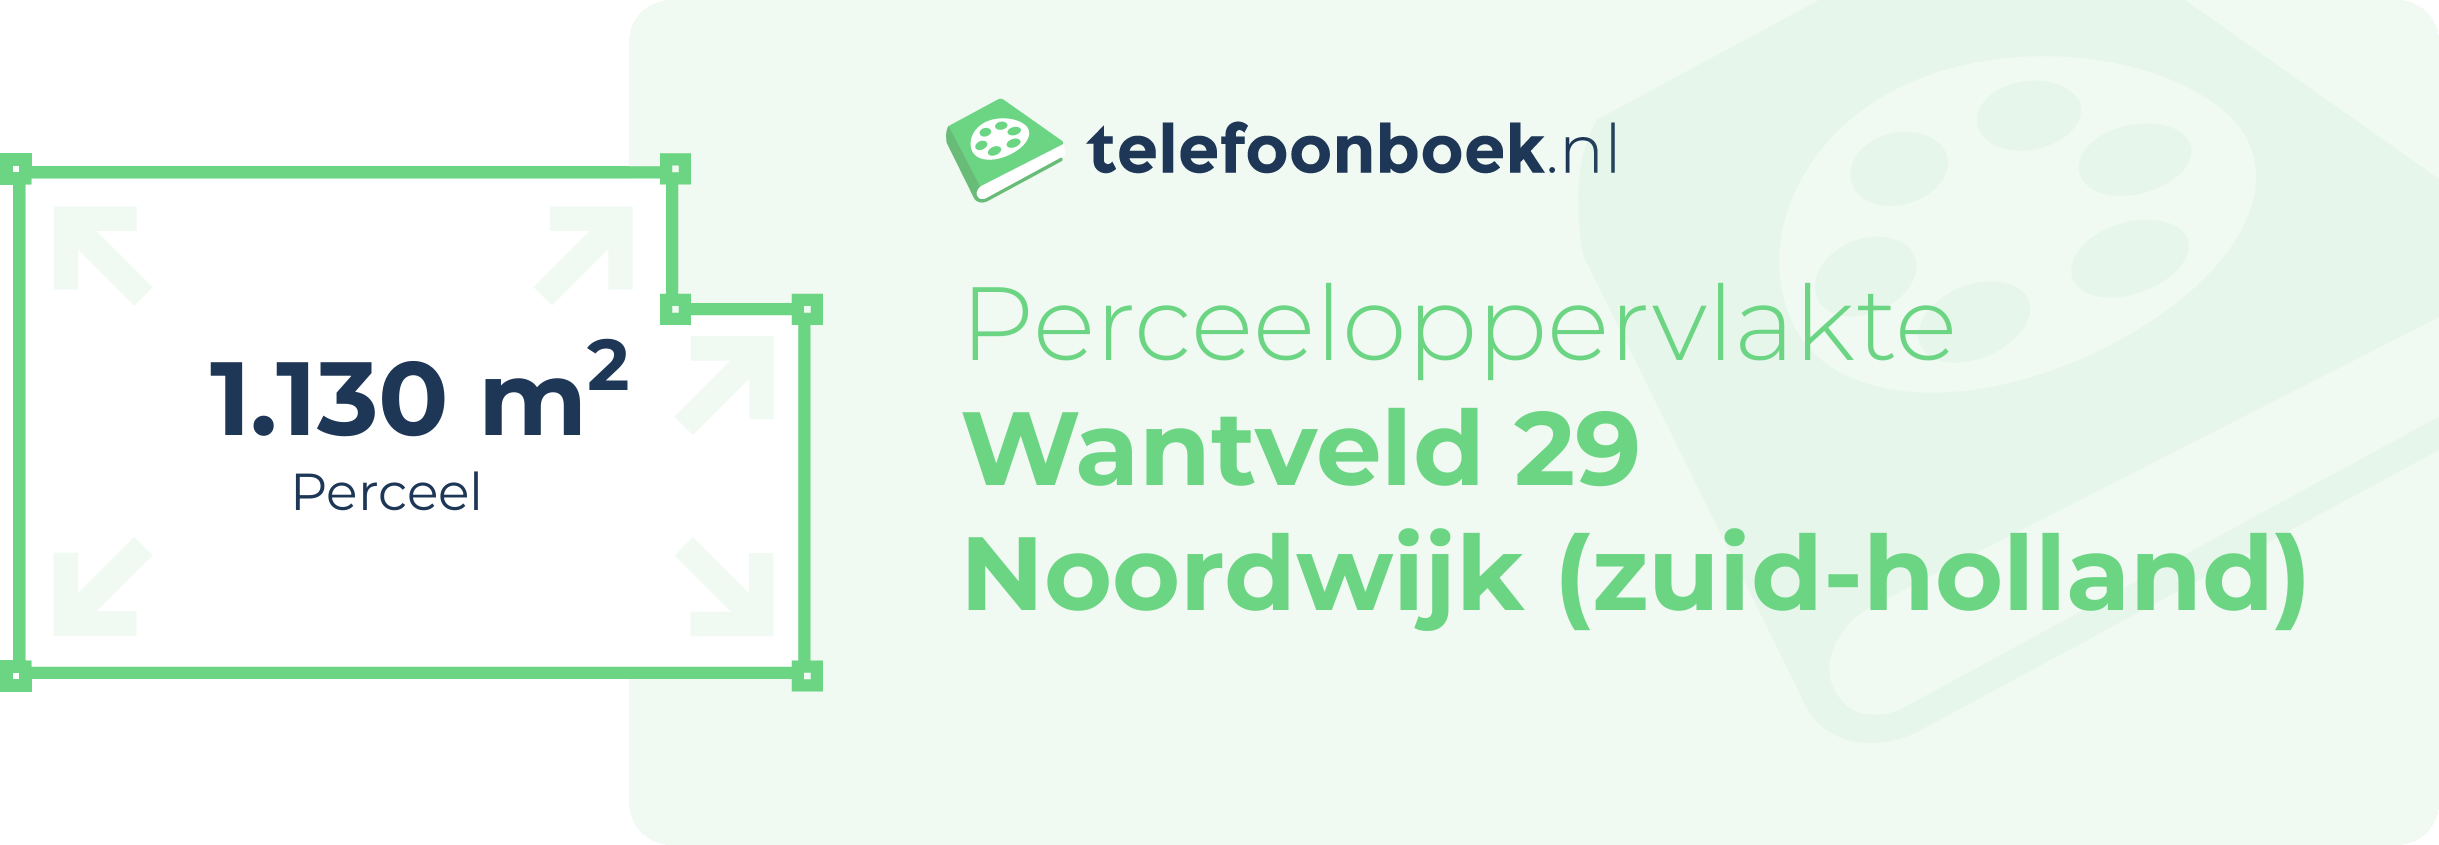 Perceeloppervlakte Wantveld 29 Noordwijk (Zuid-Holland)